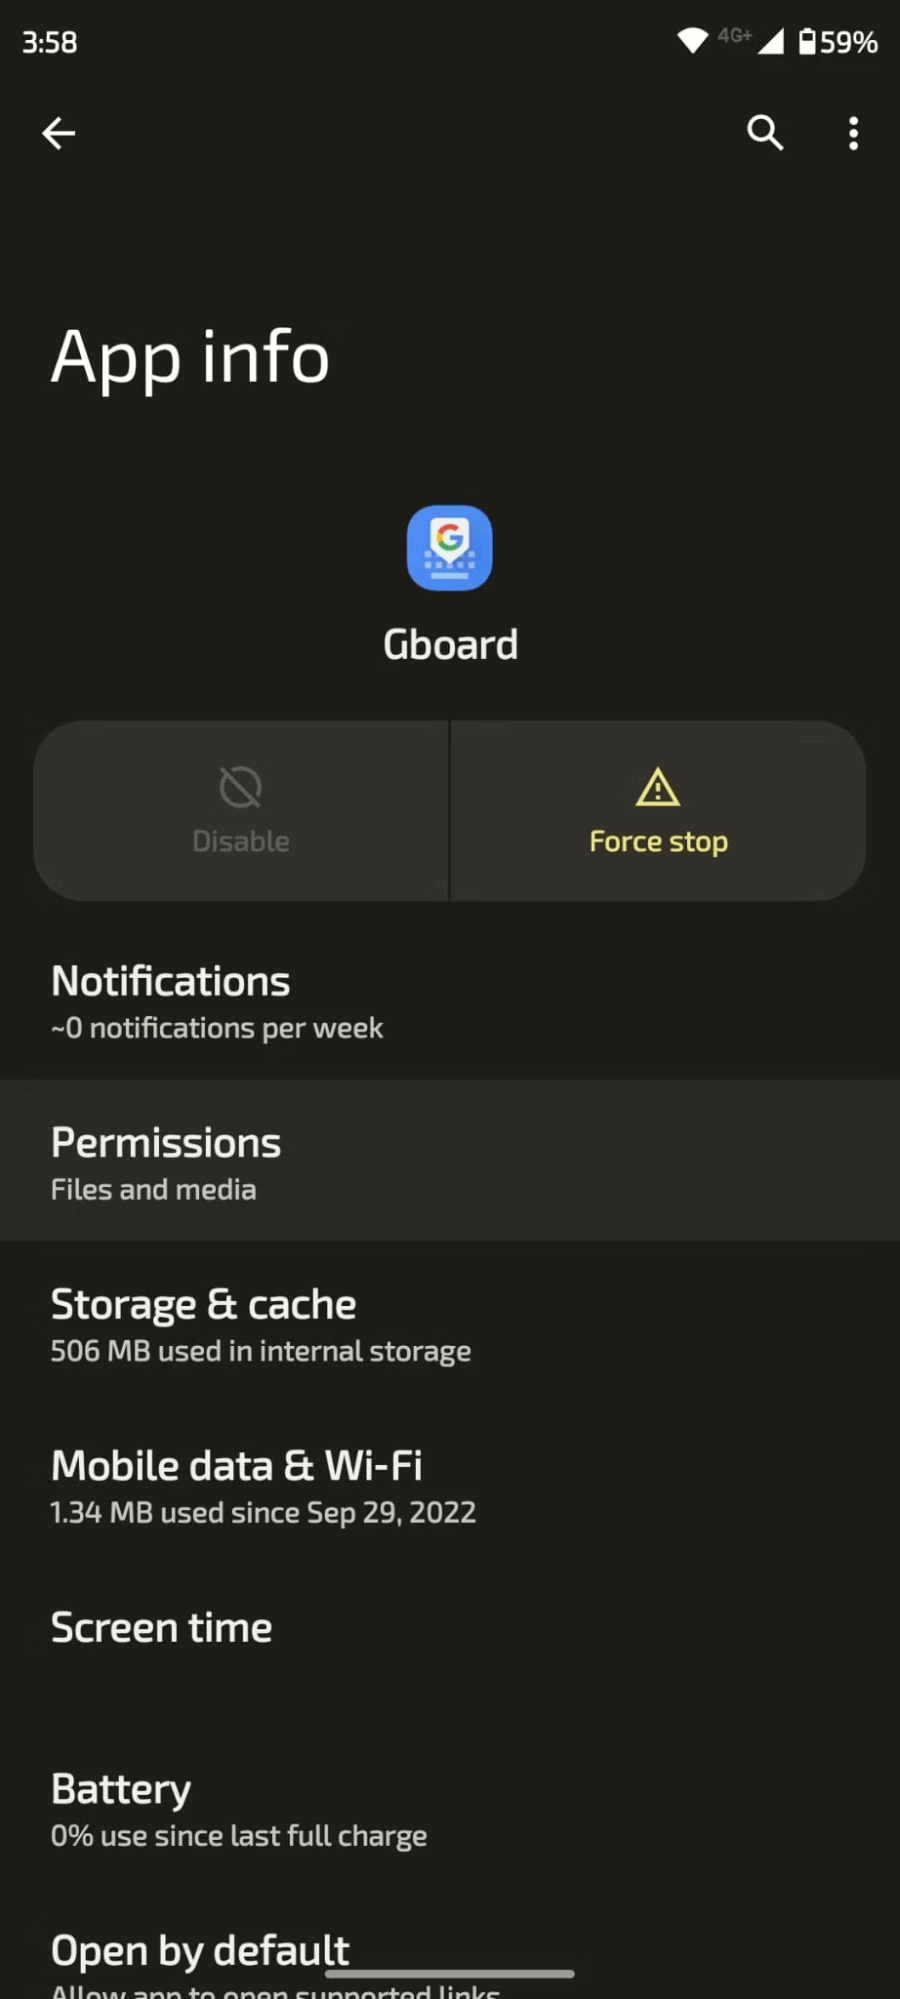 Gboard app info permissions